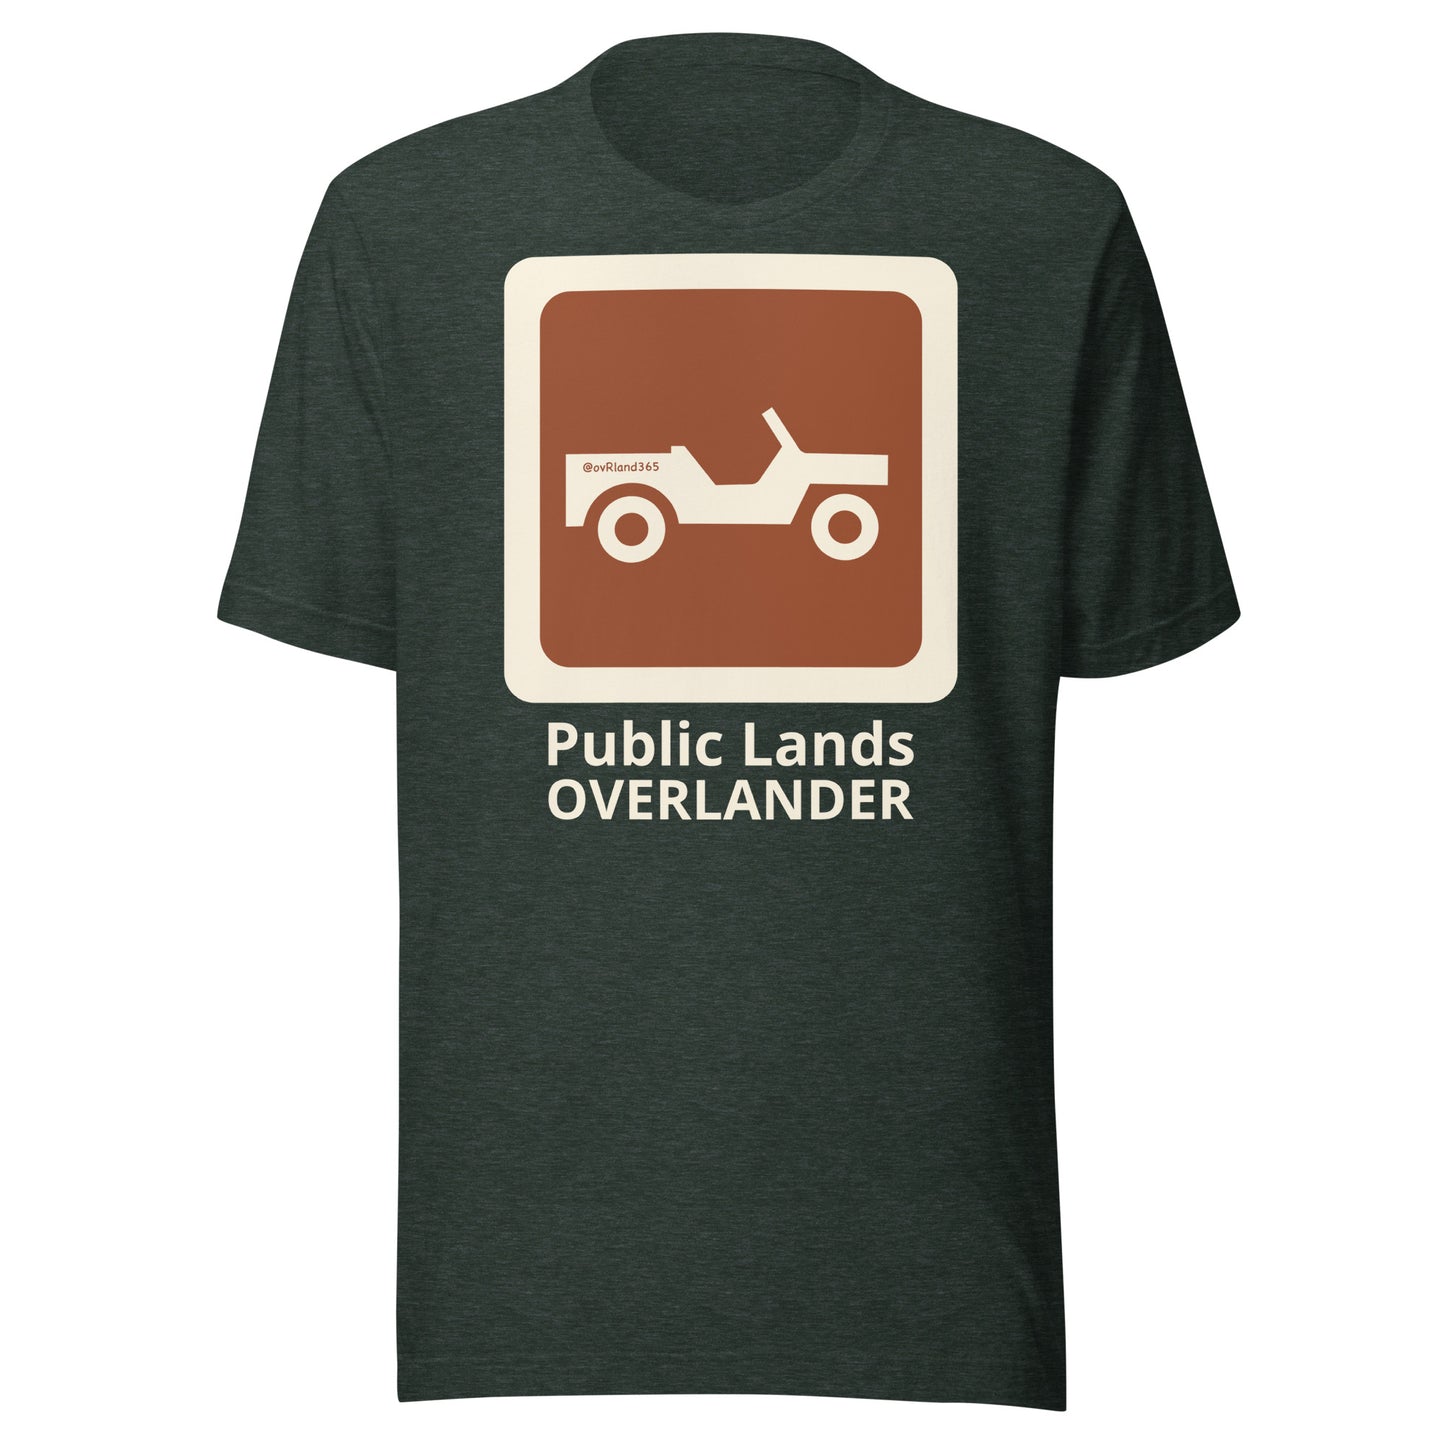 Forest Public Lands OVERLANDER t-shirt. overland365.com